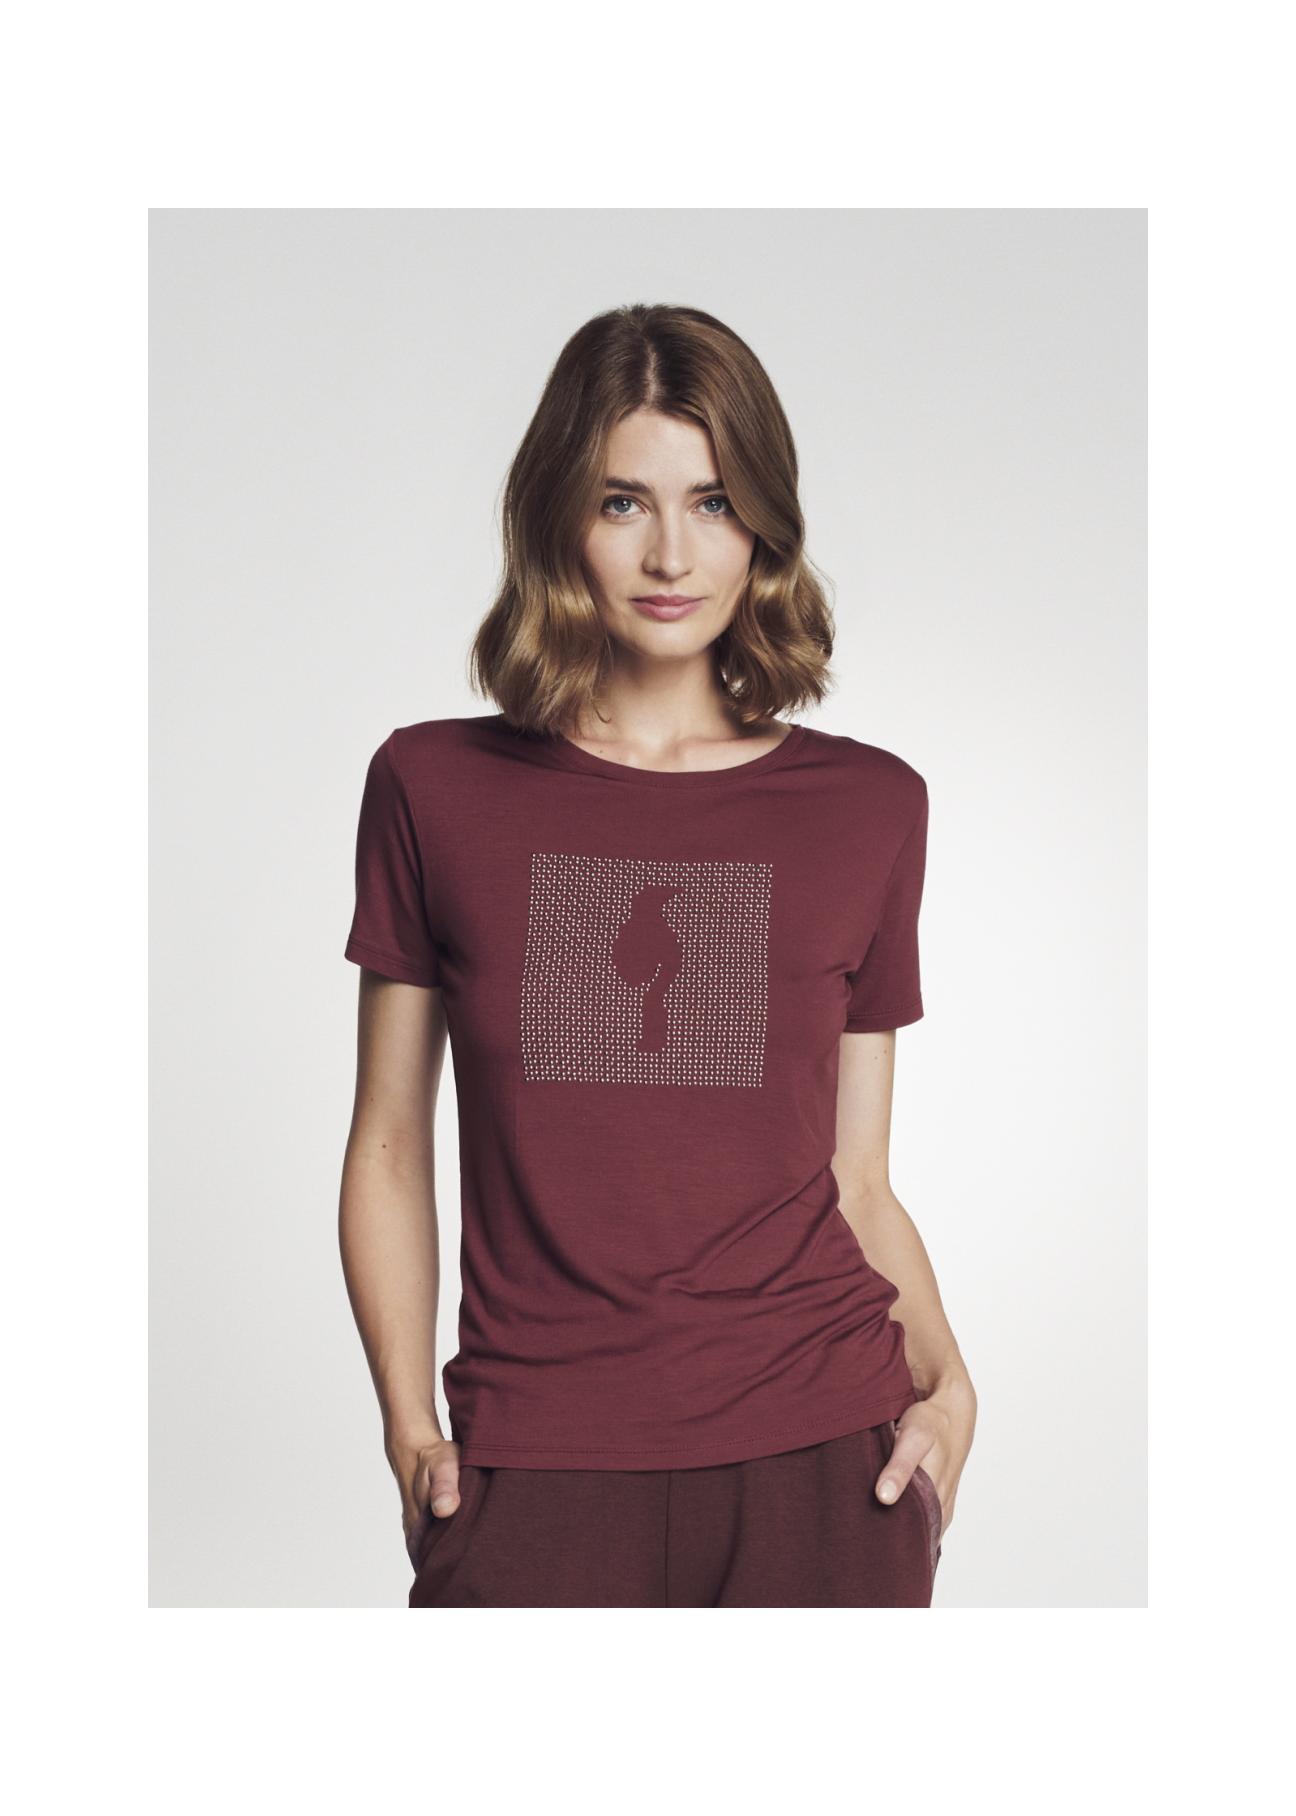 Bordowy T-shirt damski z aplikacją TSHDT-0075-49(Z21)